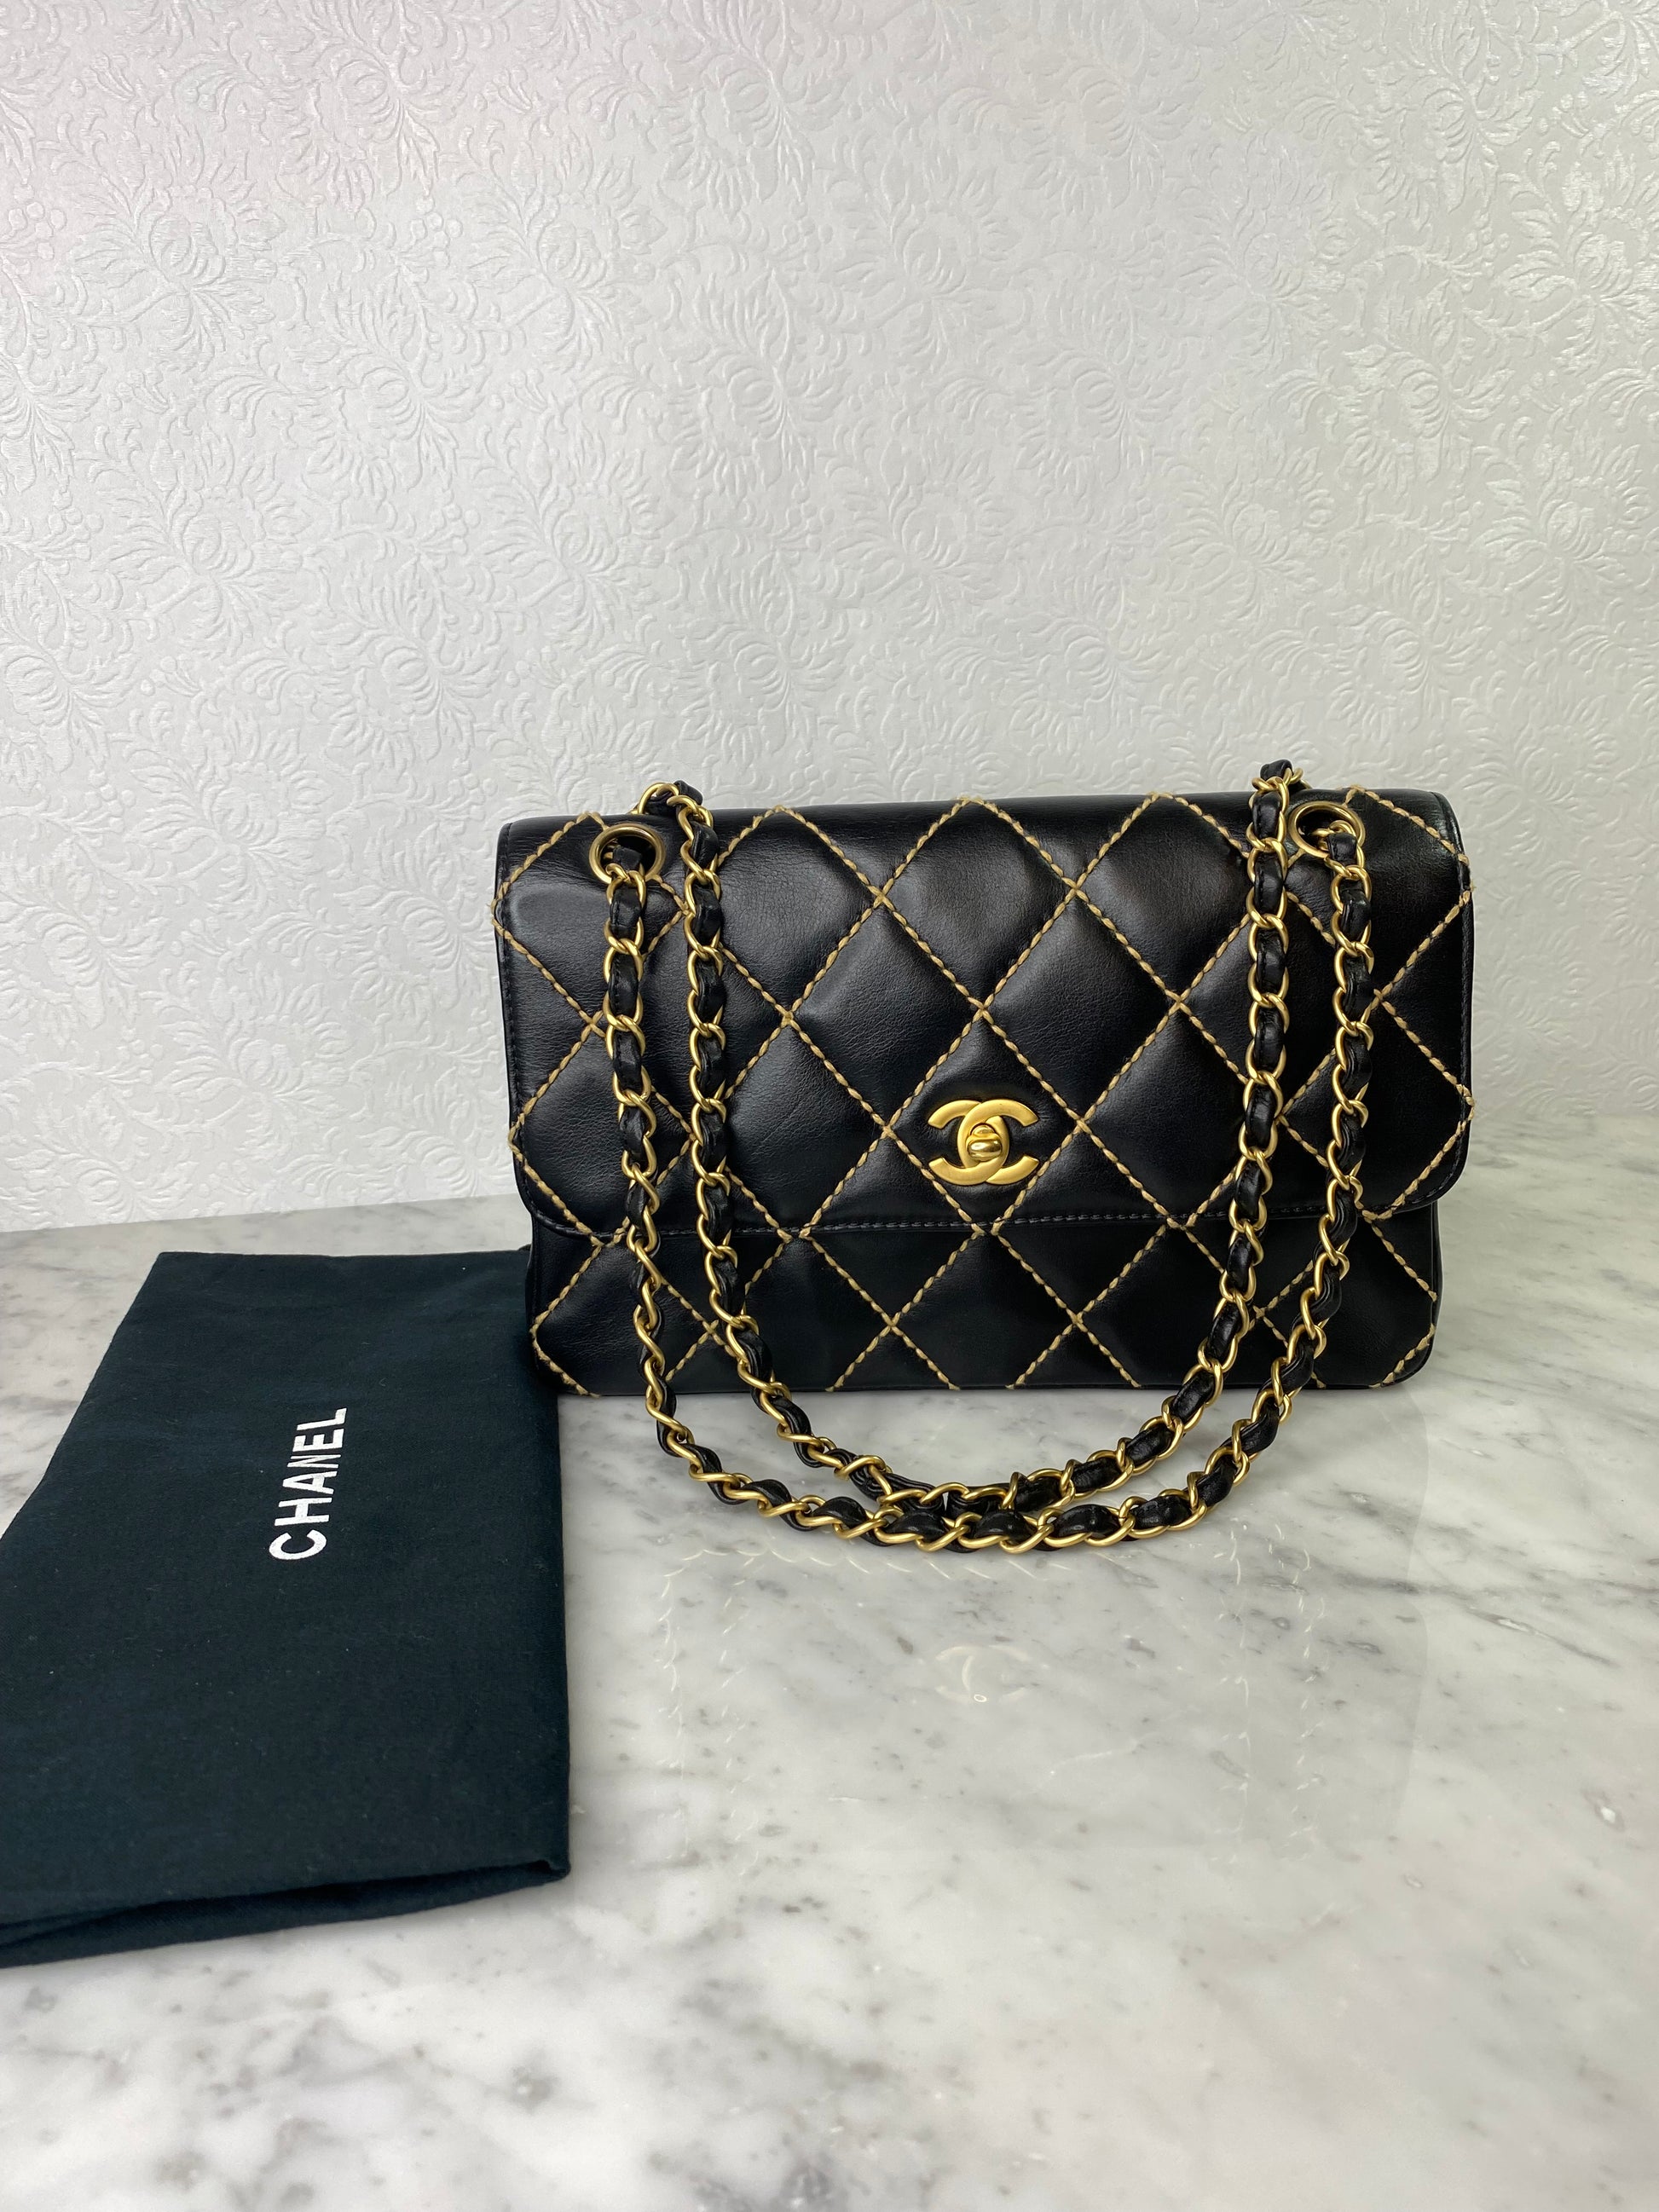 Chanel Calfskin Wild Stitch Flap Bag in Black